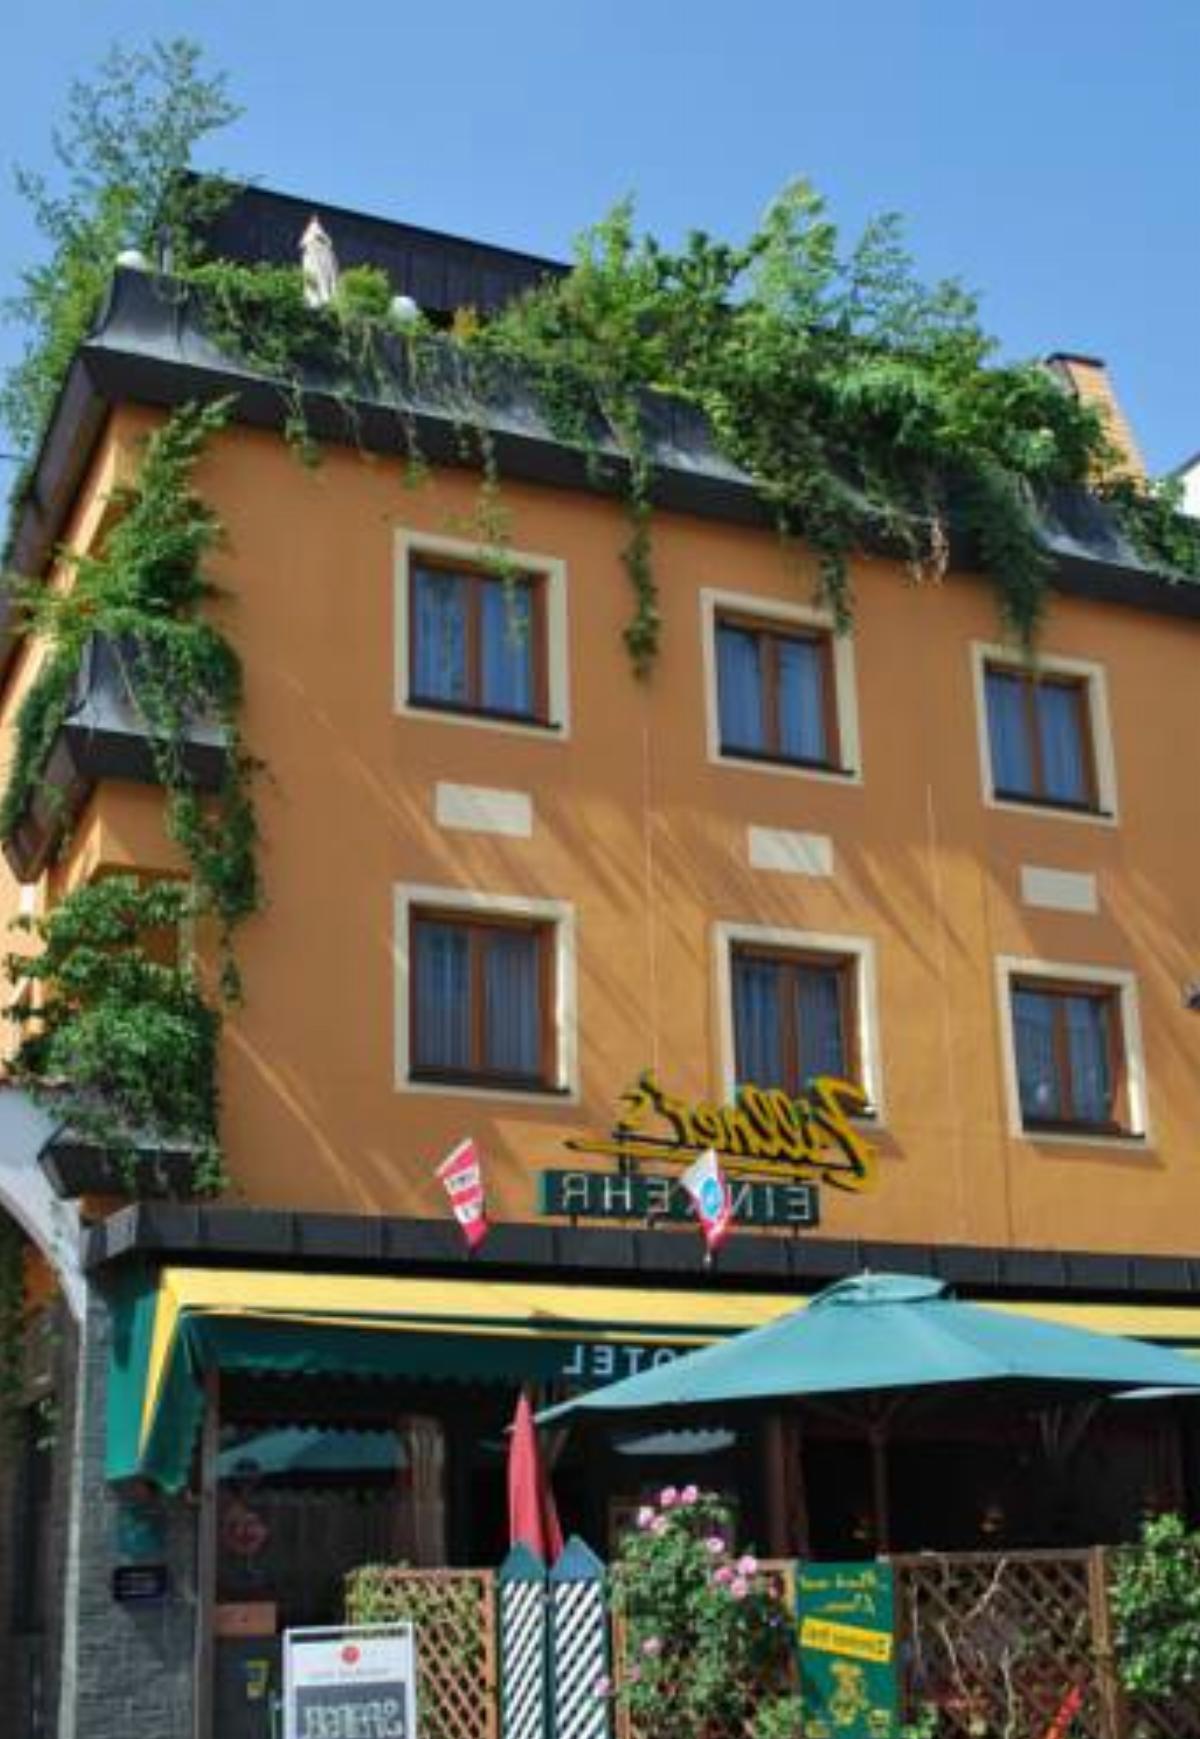 Hotel-Restaurant Zillners Einkehr Hotel Altheim Austria